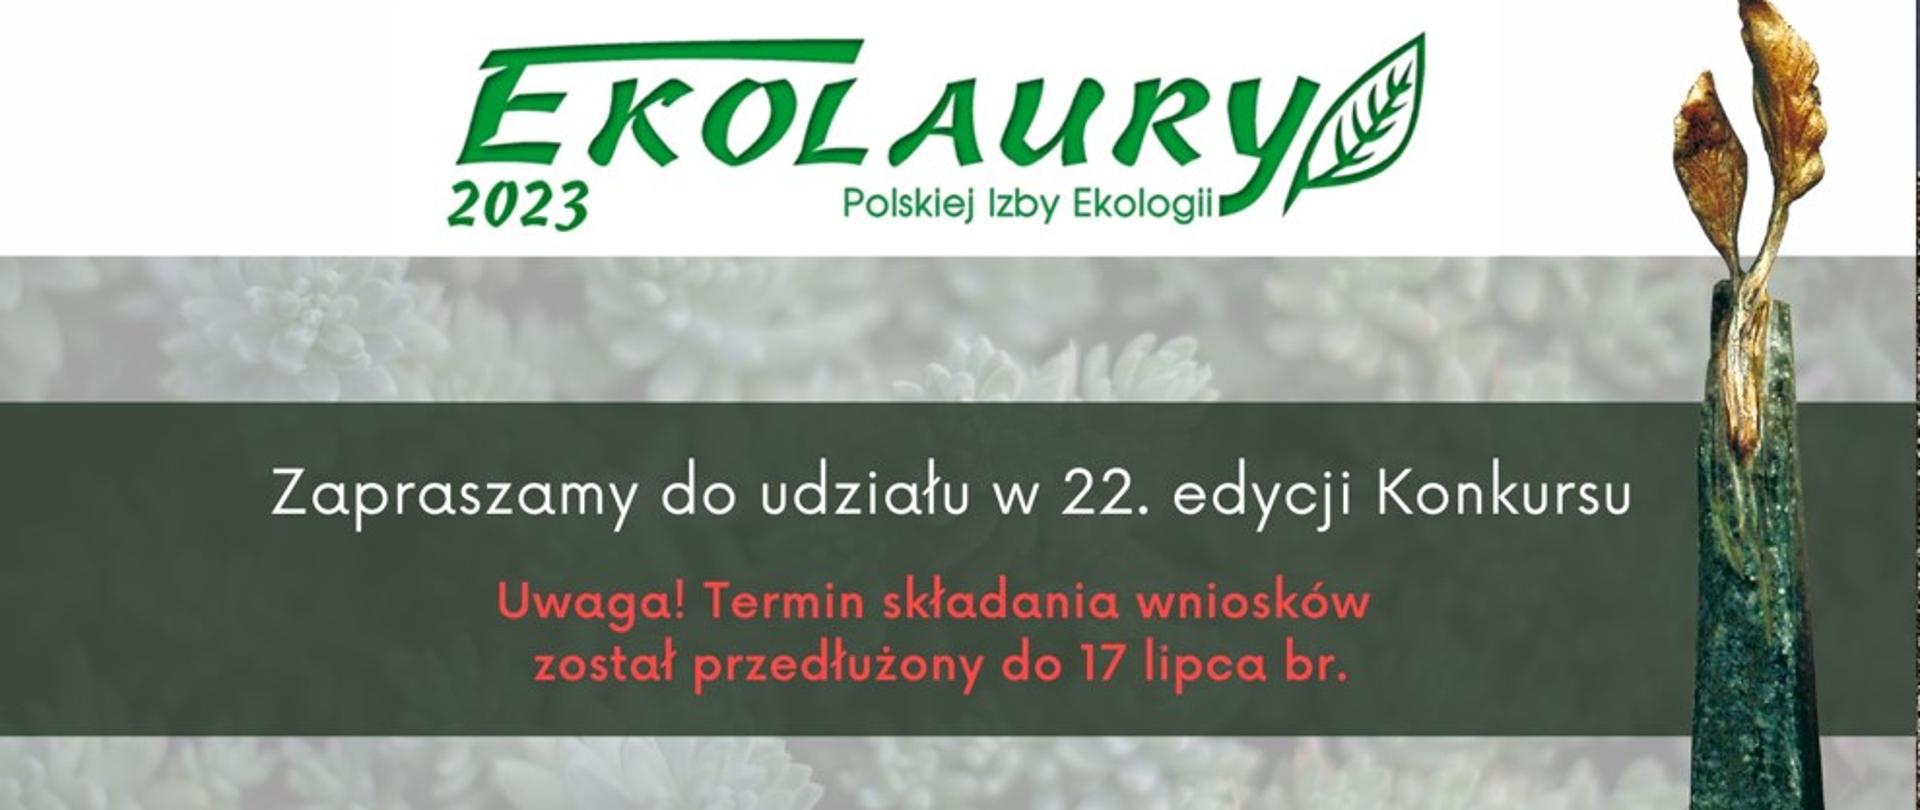 Zaproszenie do udziału w 22. edycji konkursu Ekolaury Polskiej Izby Ekologii